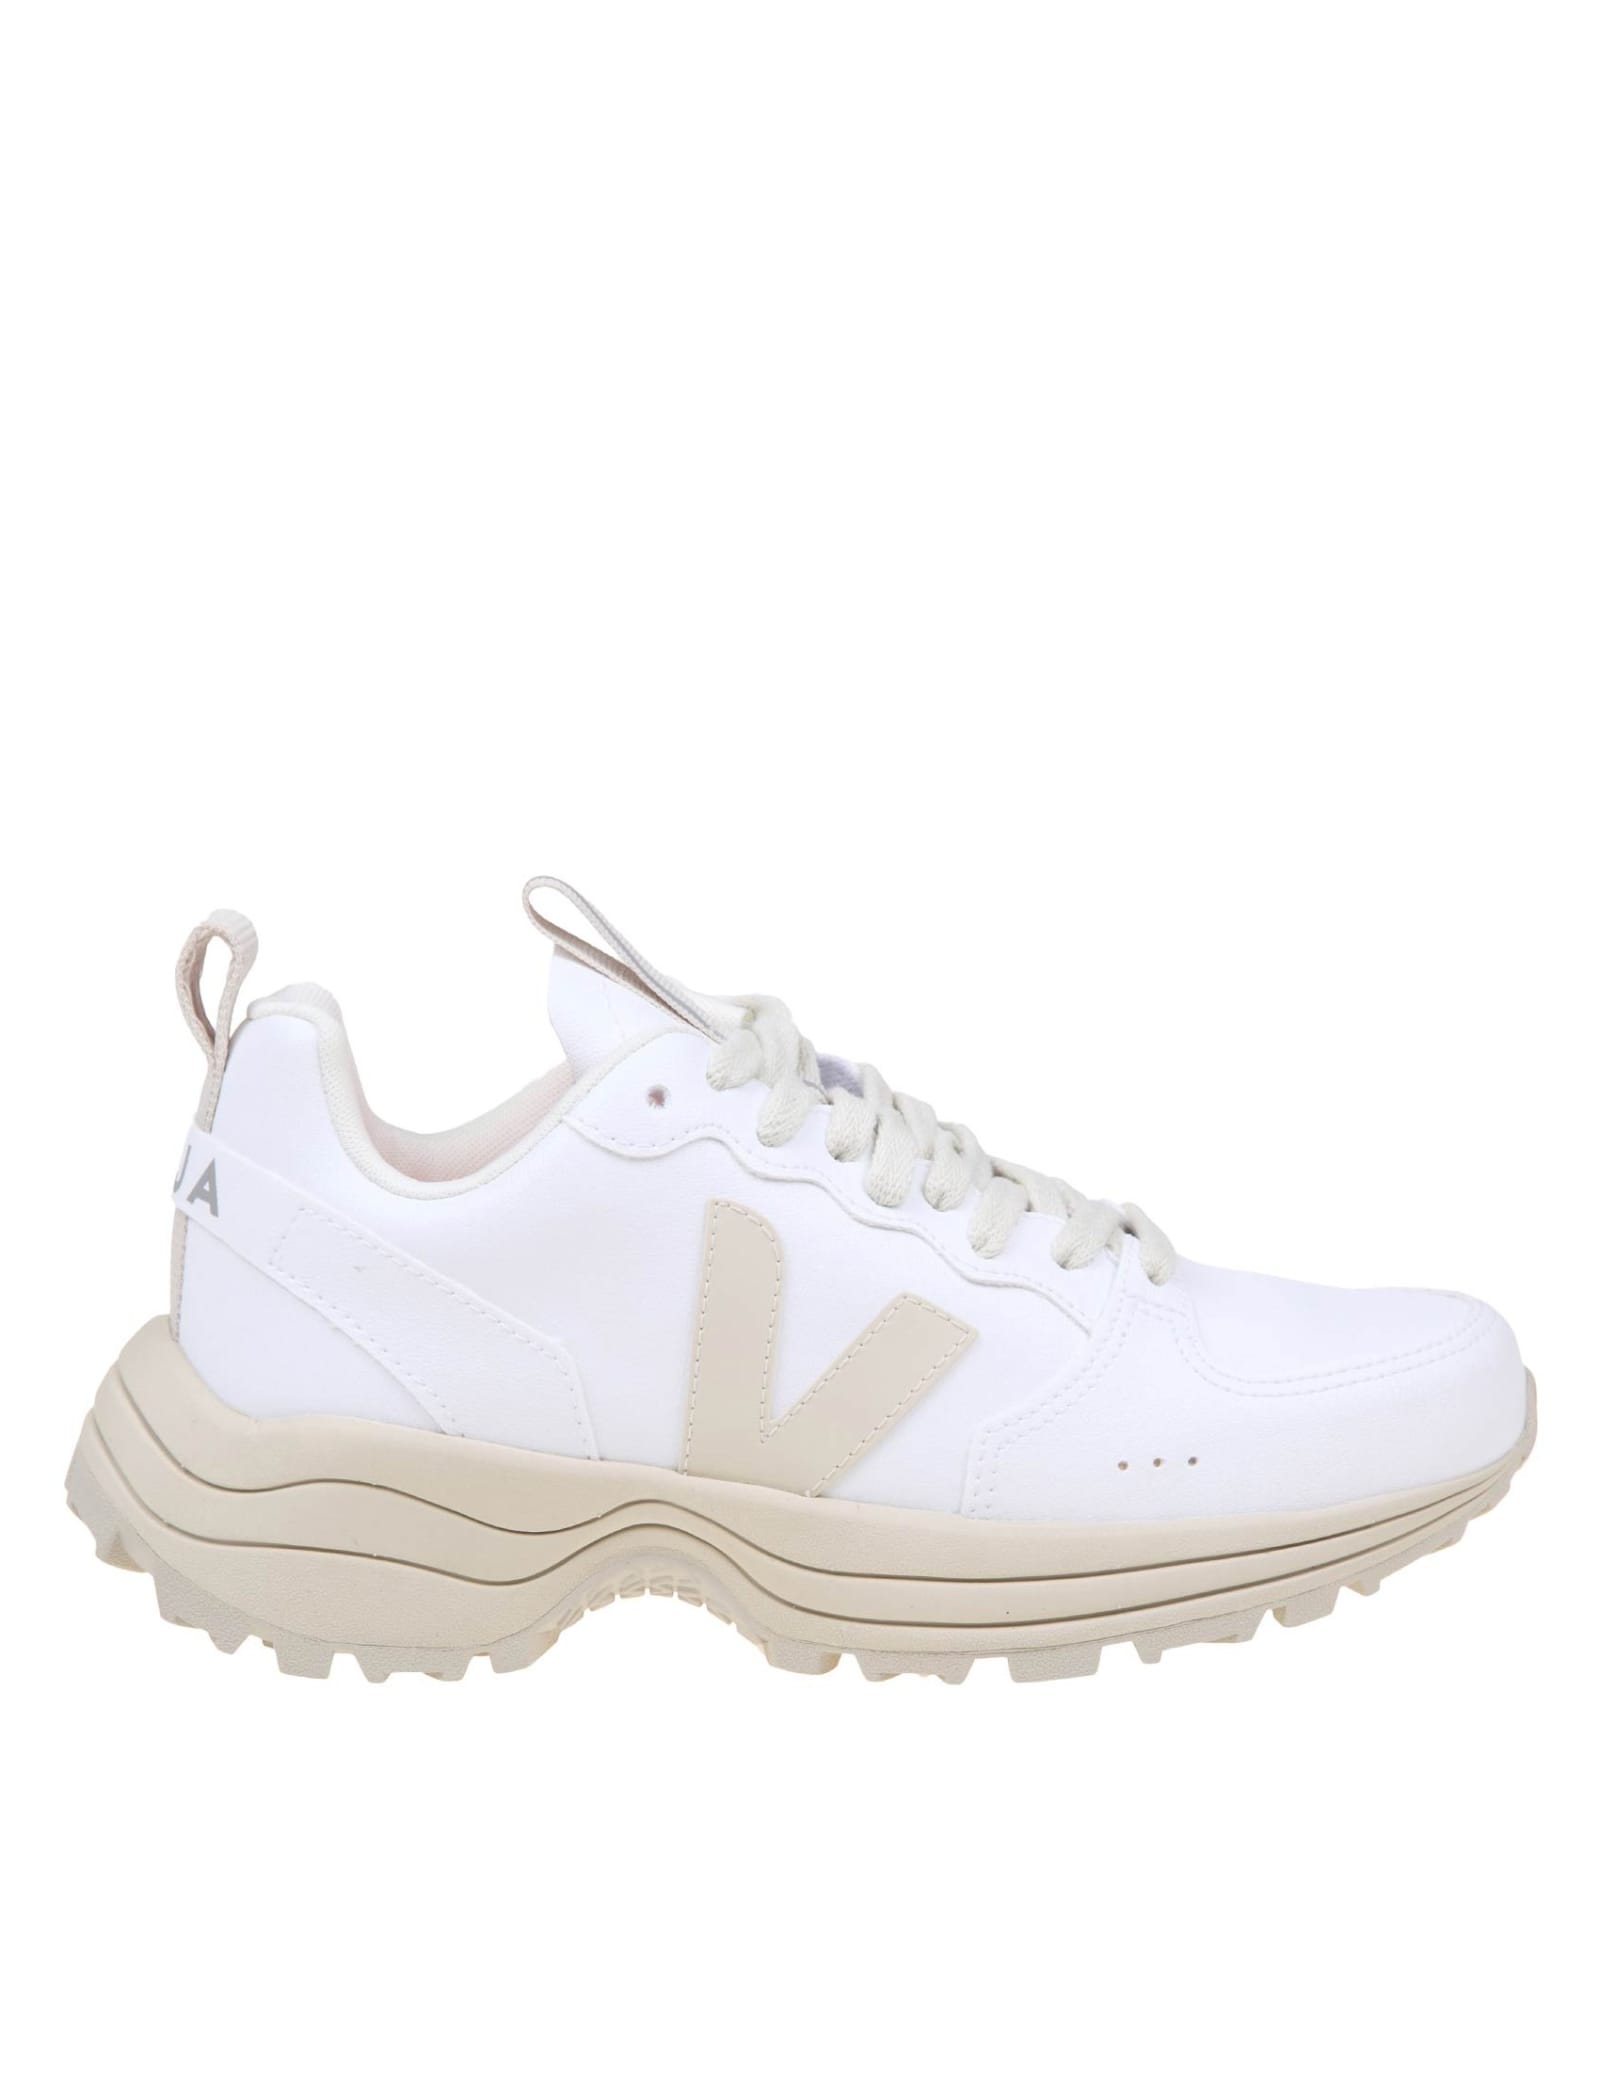 Veja Venturi Vc Sneakers In White Leather - White - female - Size: 36